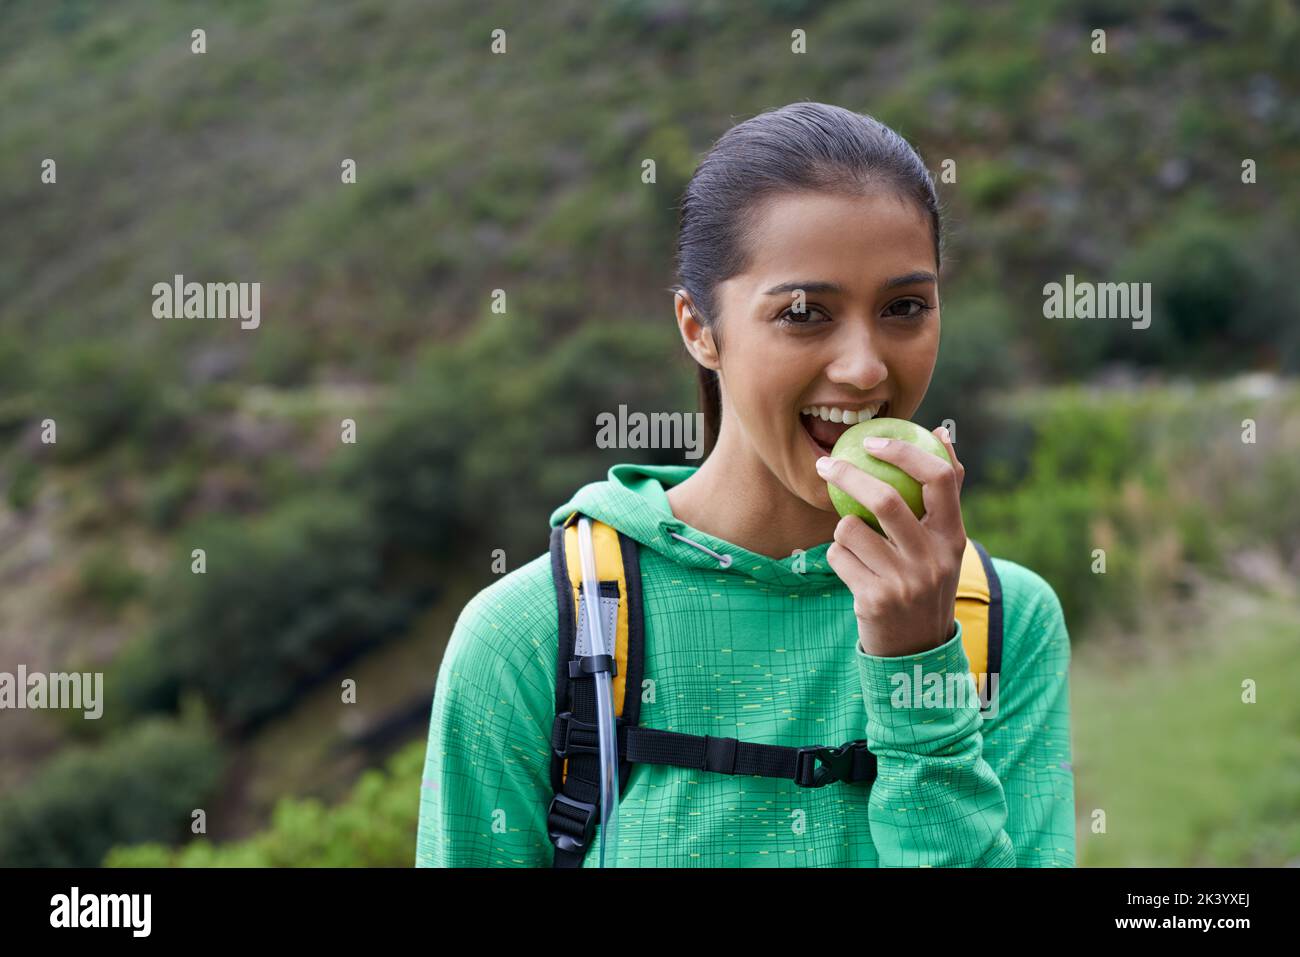 Essen die richtige Nahrung für nachhaltige Energie. Beschnittene Ansicht eines jungen Wanderers, der einen Apfel auf dem Trail genießt. Stockfoto